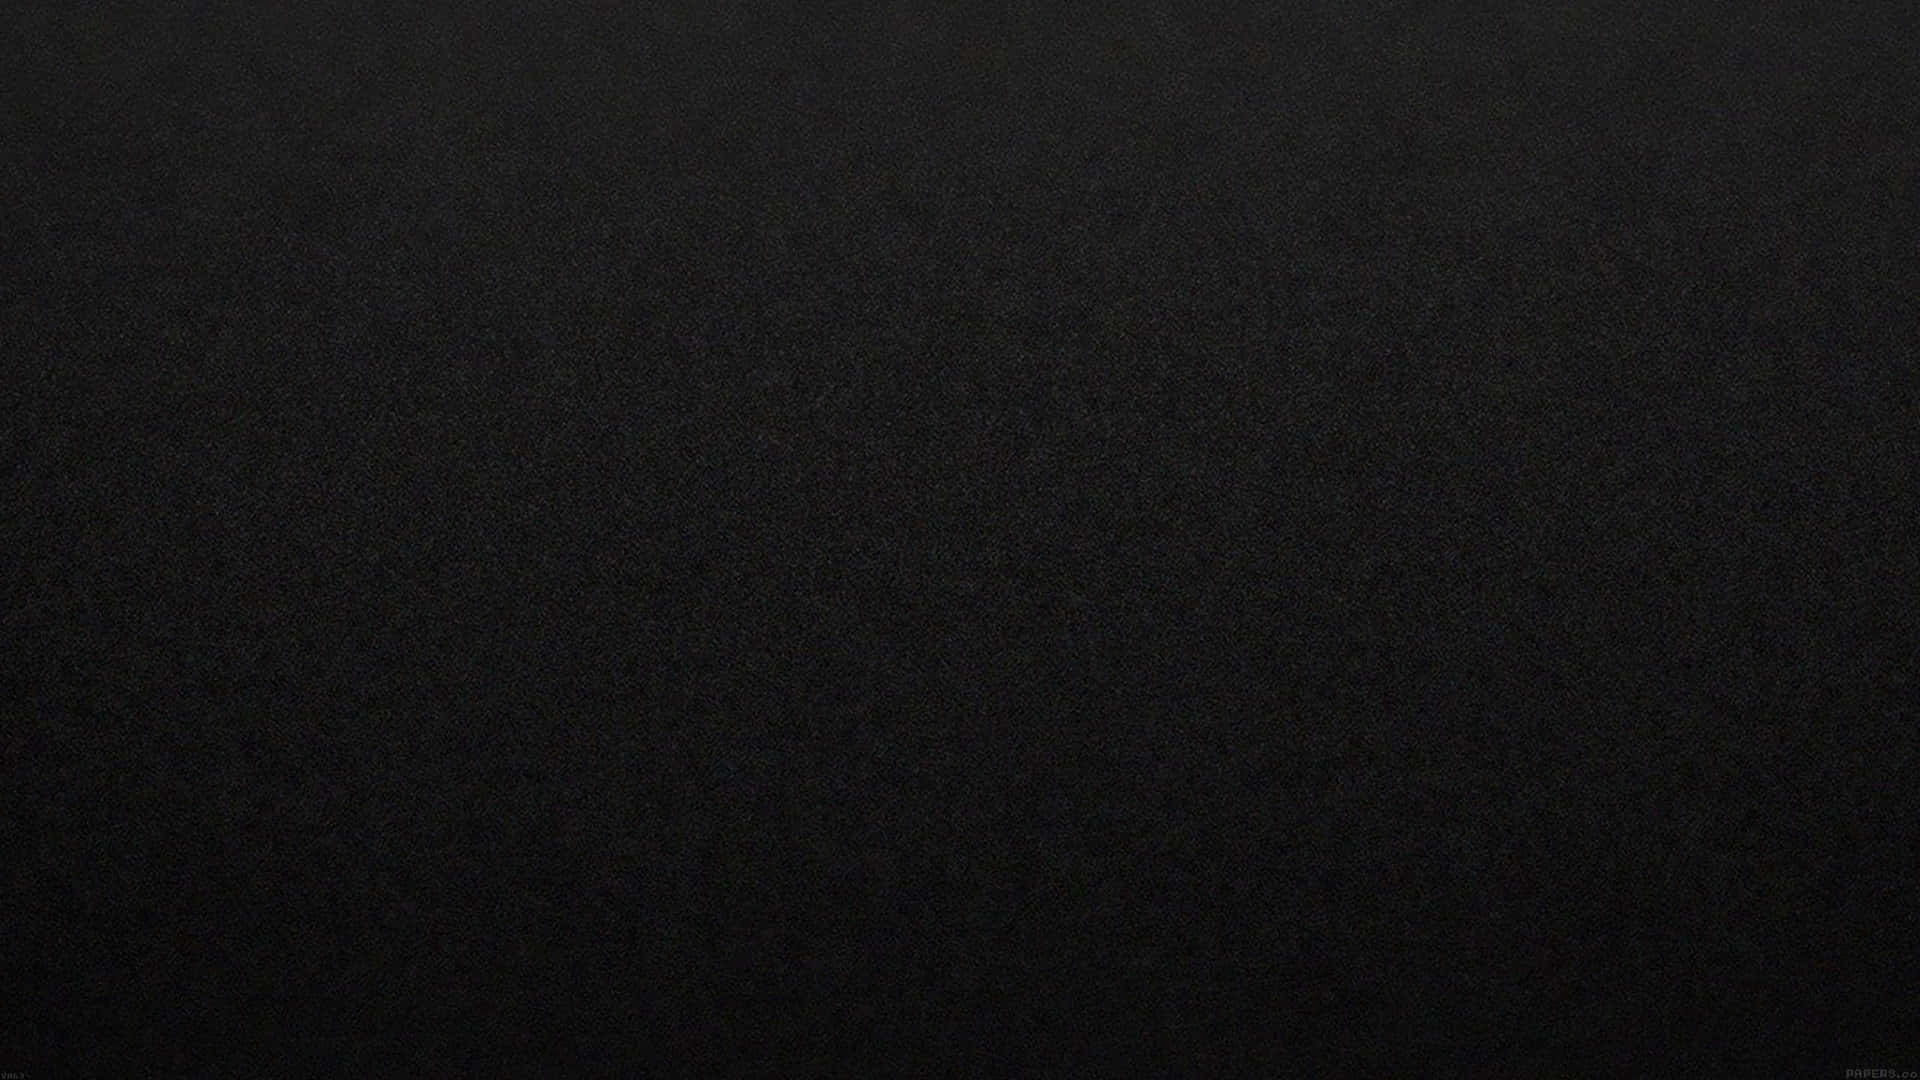 Schwarzeskohlefaser, Eine Technologie Zur Verbesserung Von Industriellen Festigkeit Materialien. Wallpaper